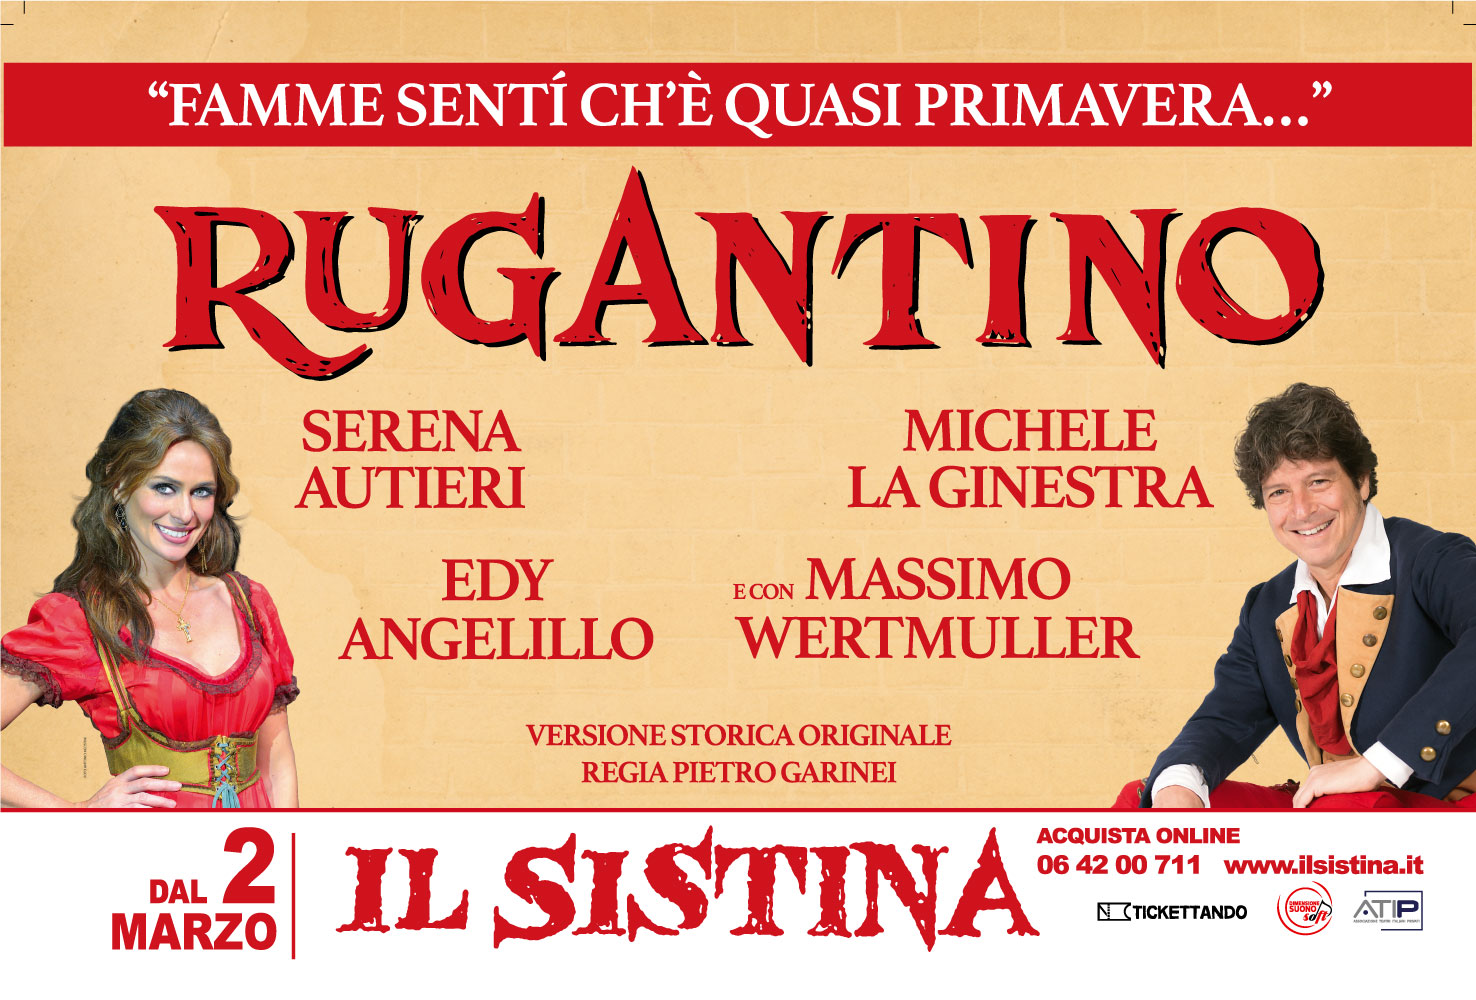 Teatro Sistina: dal 2 Marzo “Rugantino” con Serena Autieri e Michele La Ginestra